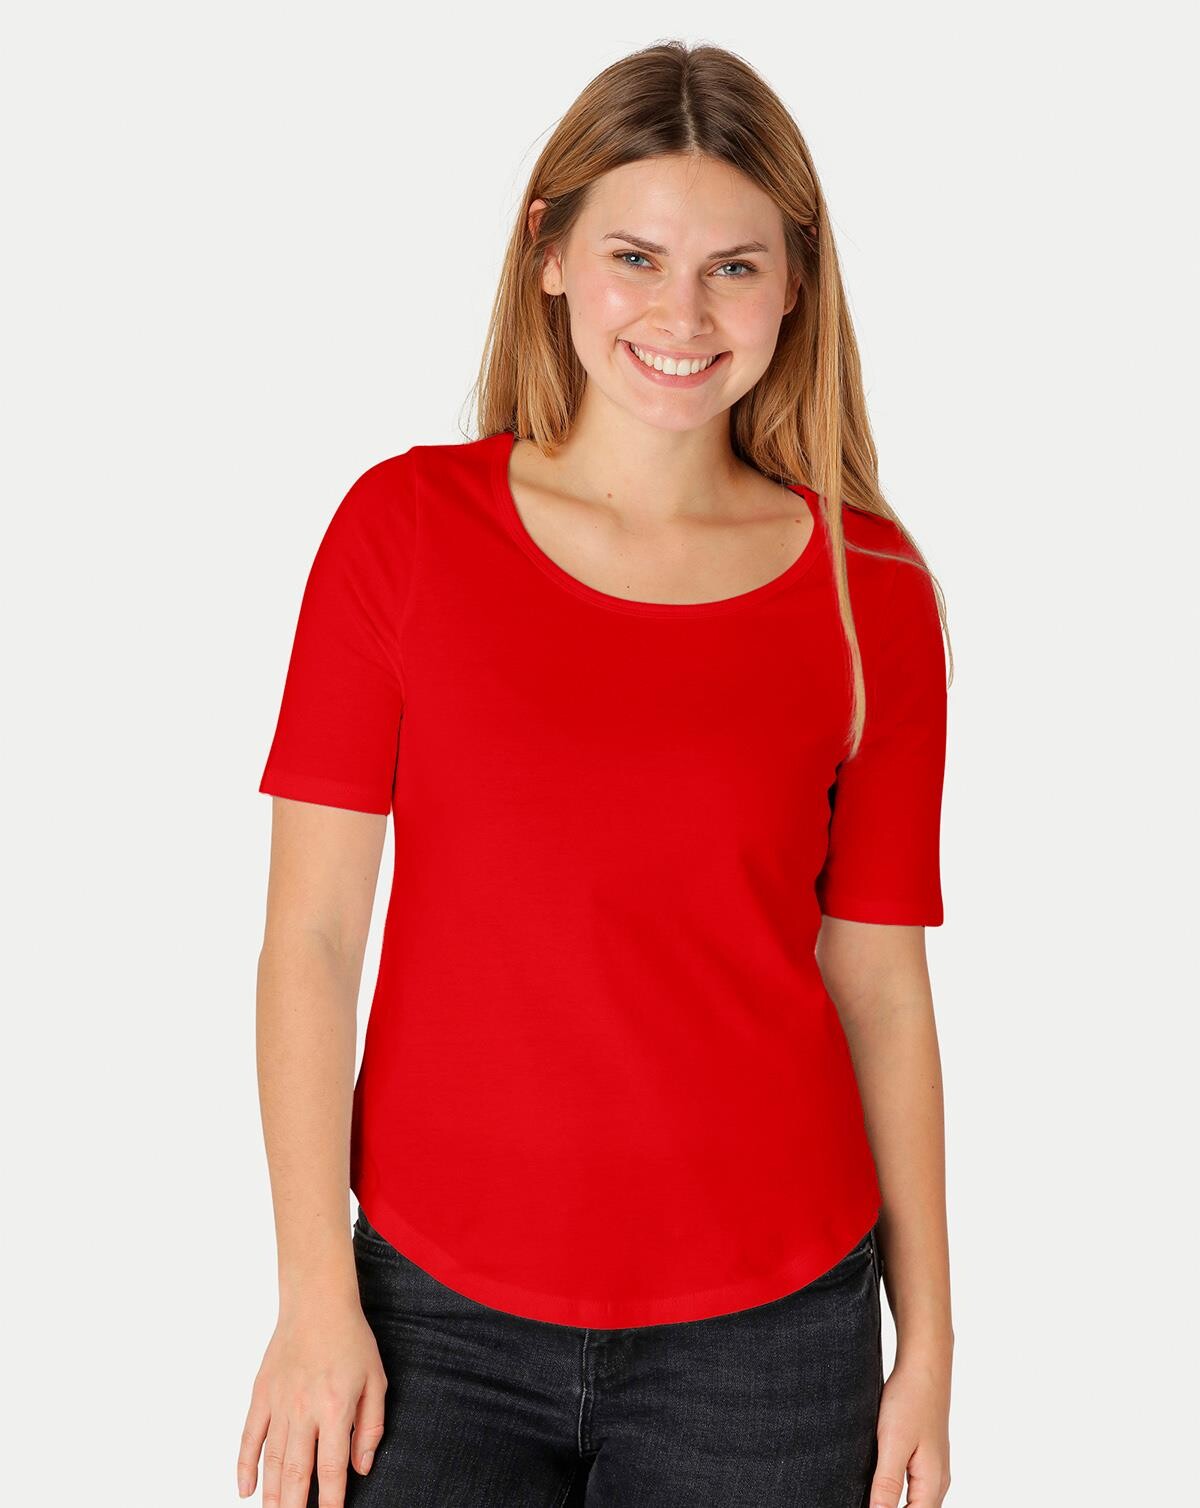 Neutral Organic - Ladies Half Sleeve T-shirt (Rød, L)